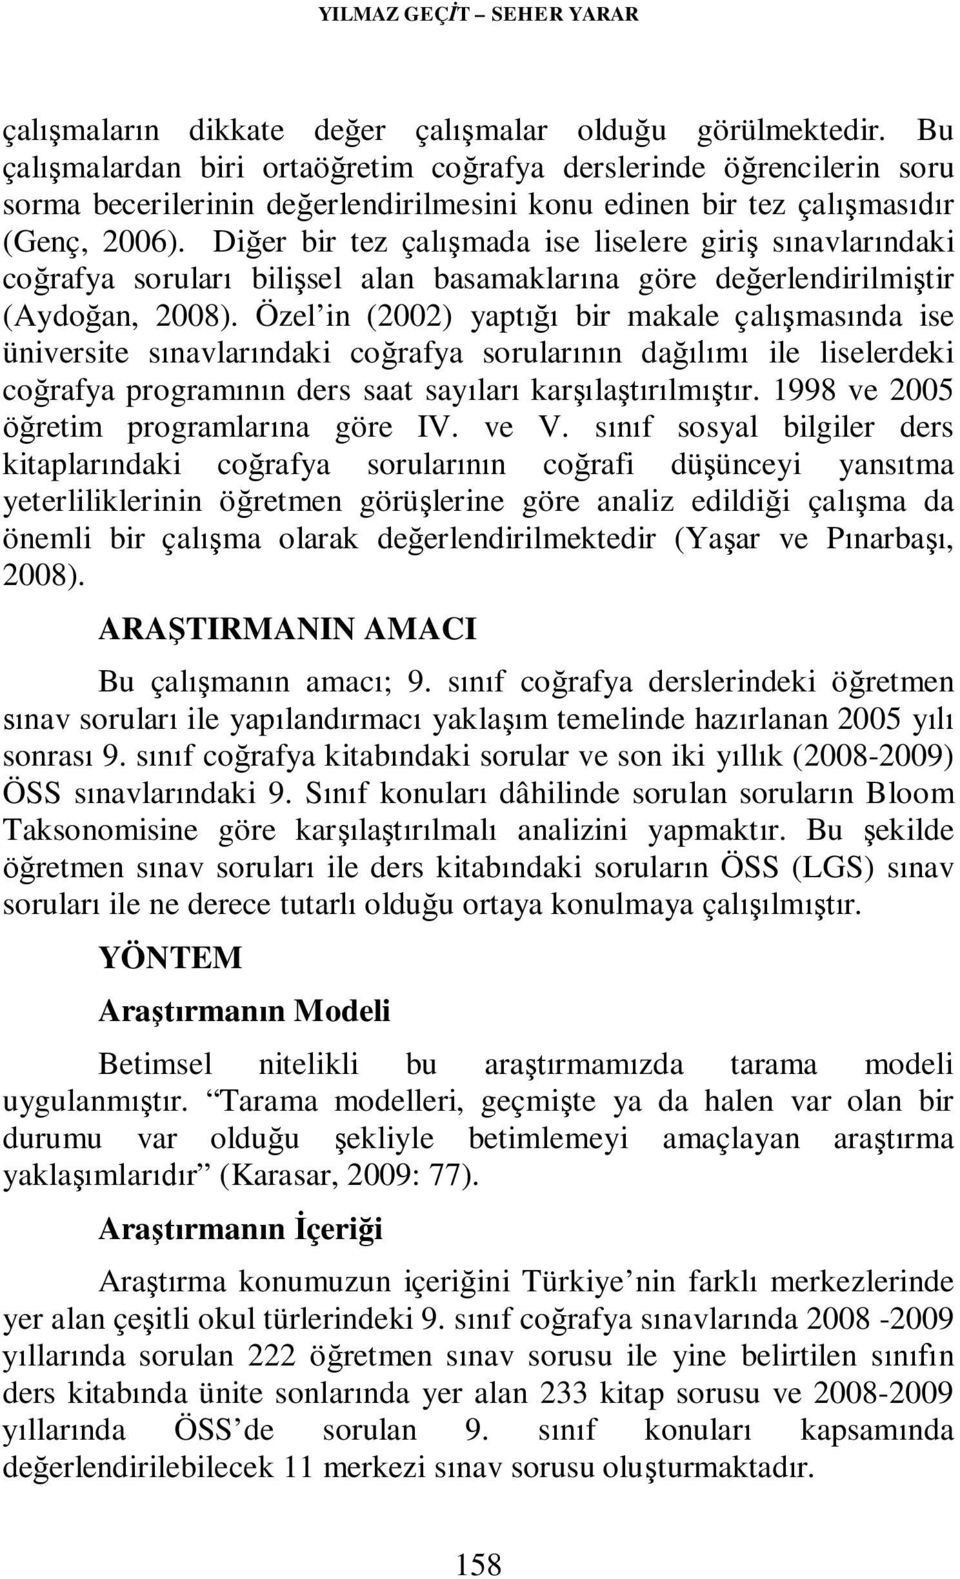 Diğer bir tez çalışmada ise liselere giriş sınavlarındaki coğrafya soruları bilişsel alan basamaklarına göre değerlendirilmiştir (Aydoğan, 2008).